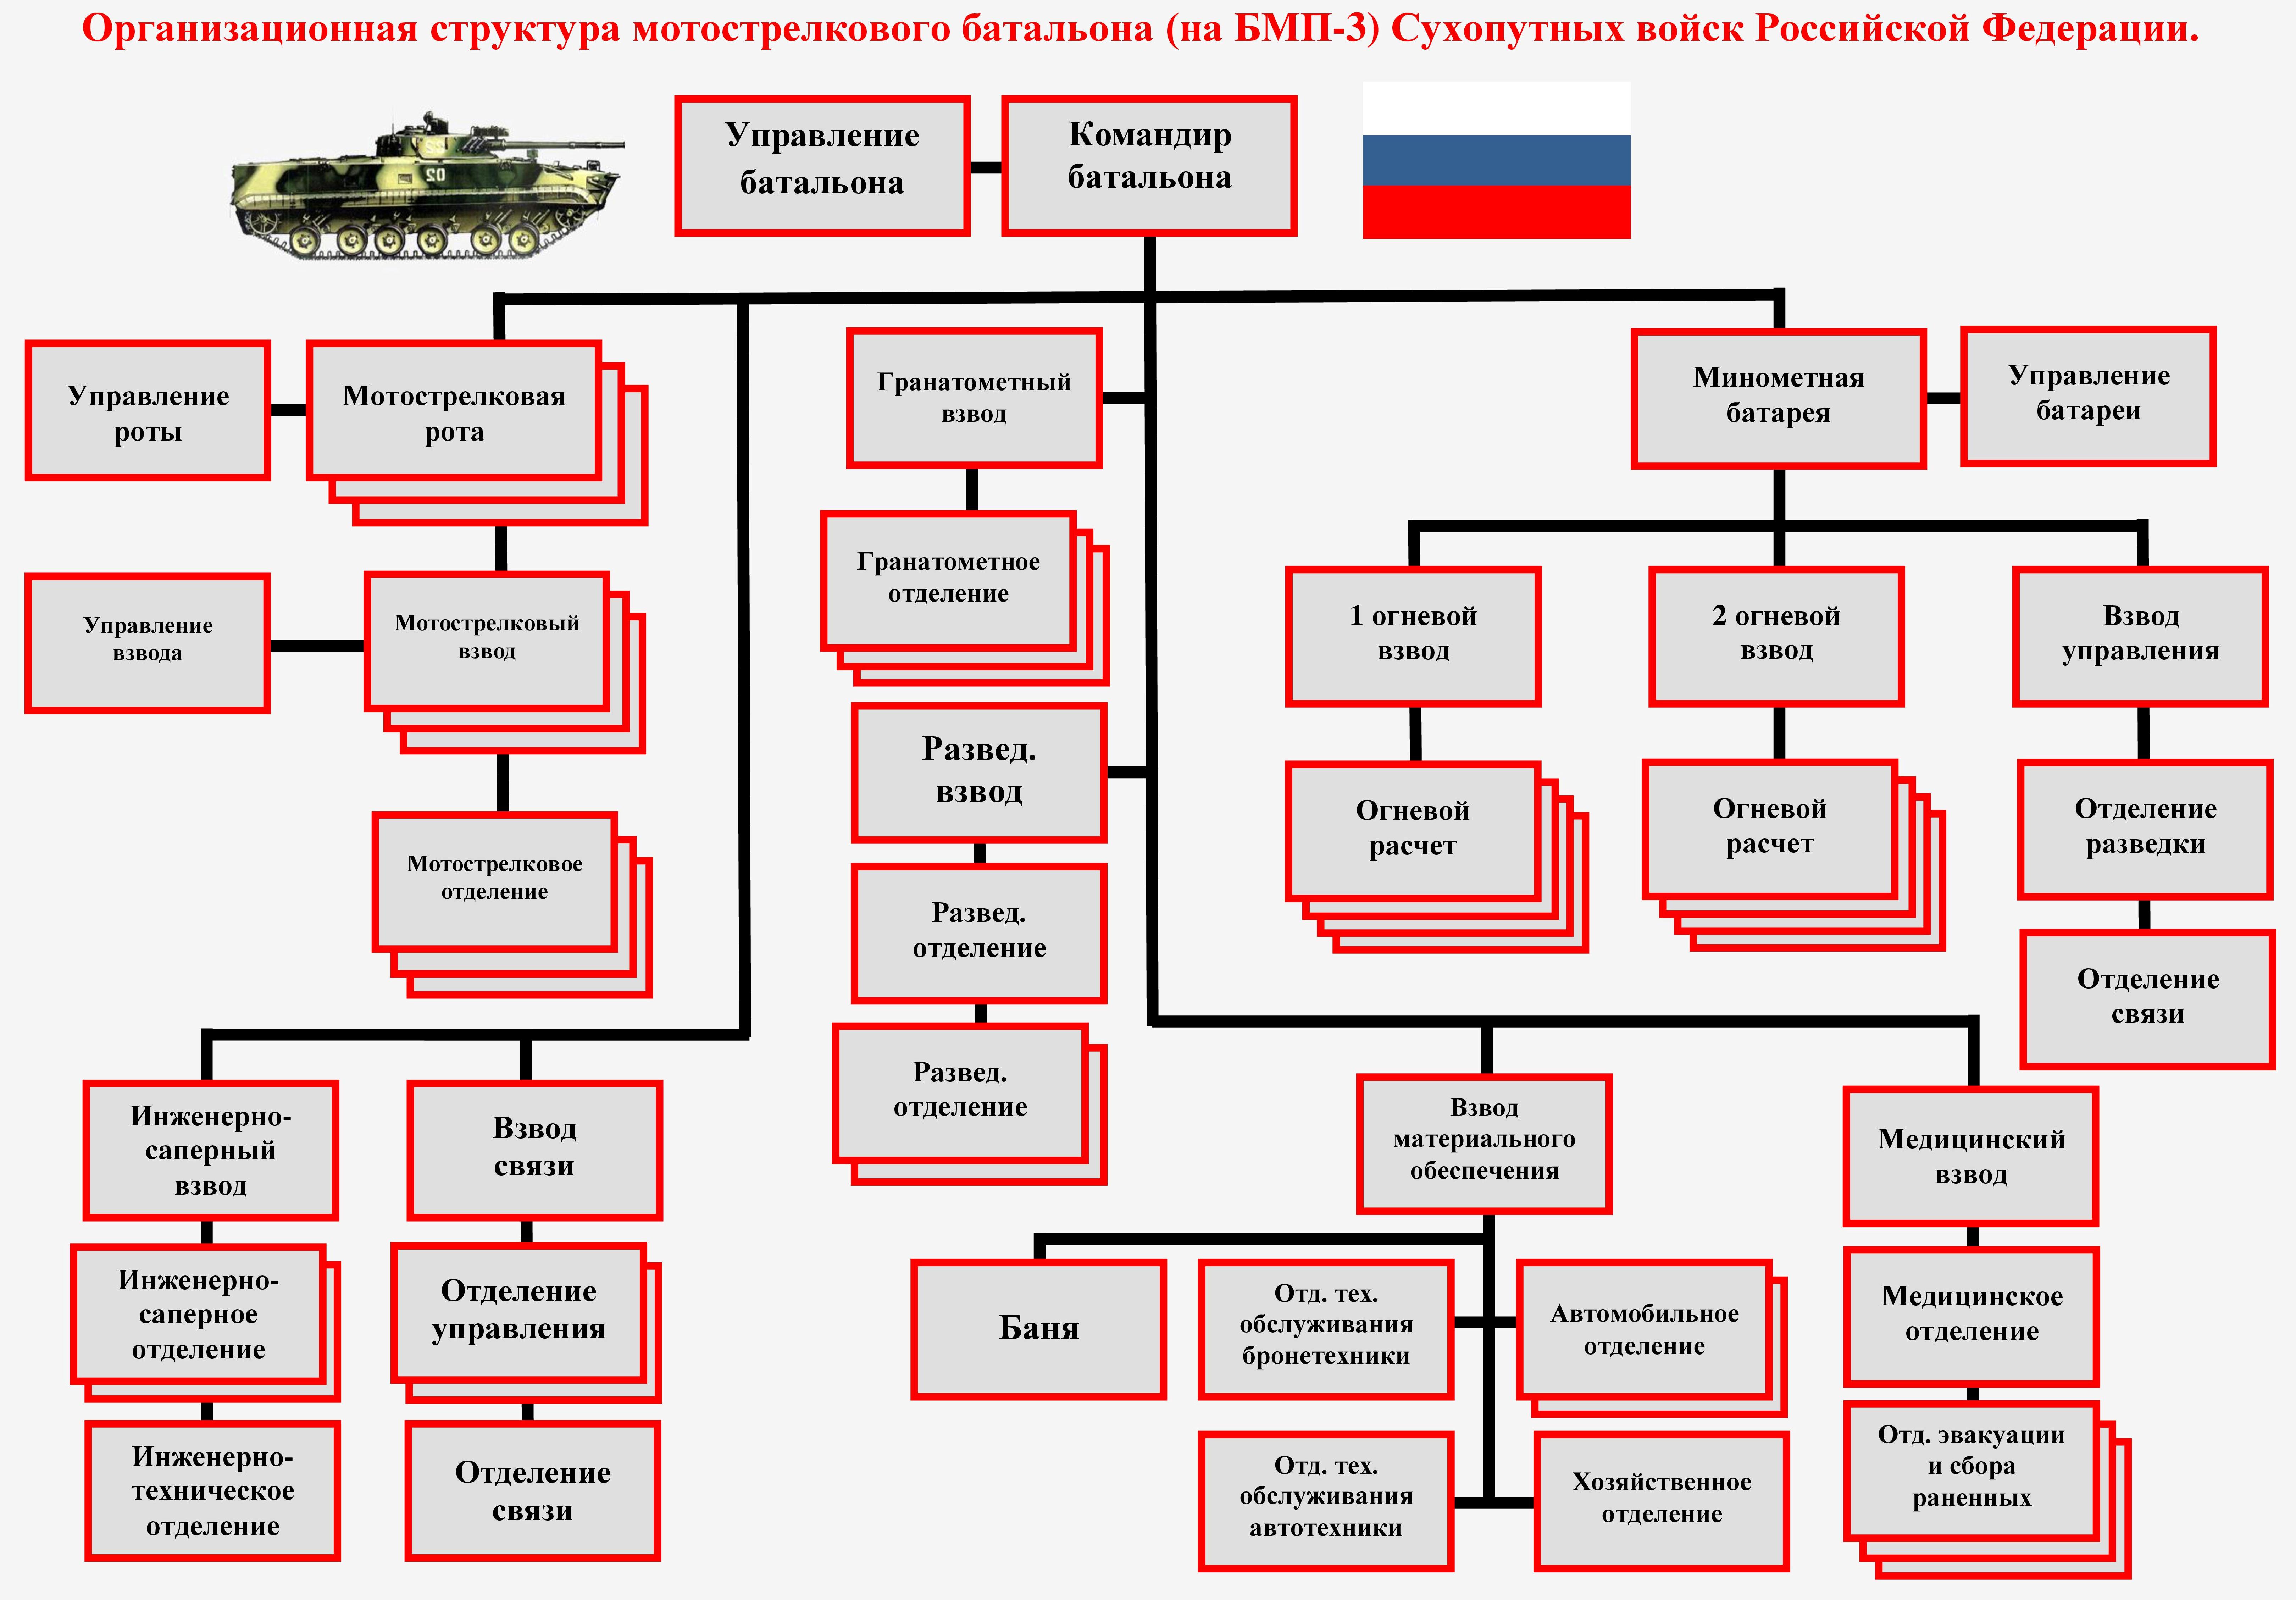 Организационная структура мотострелкового батальона РФ